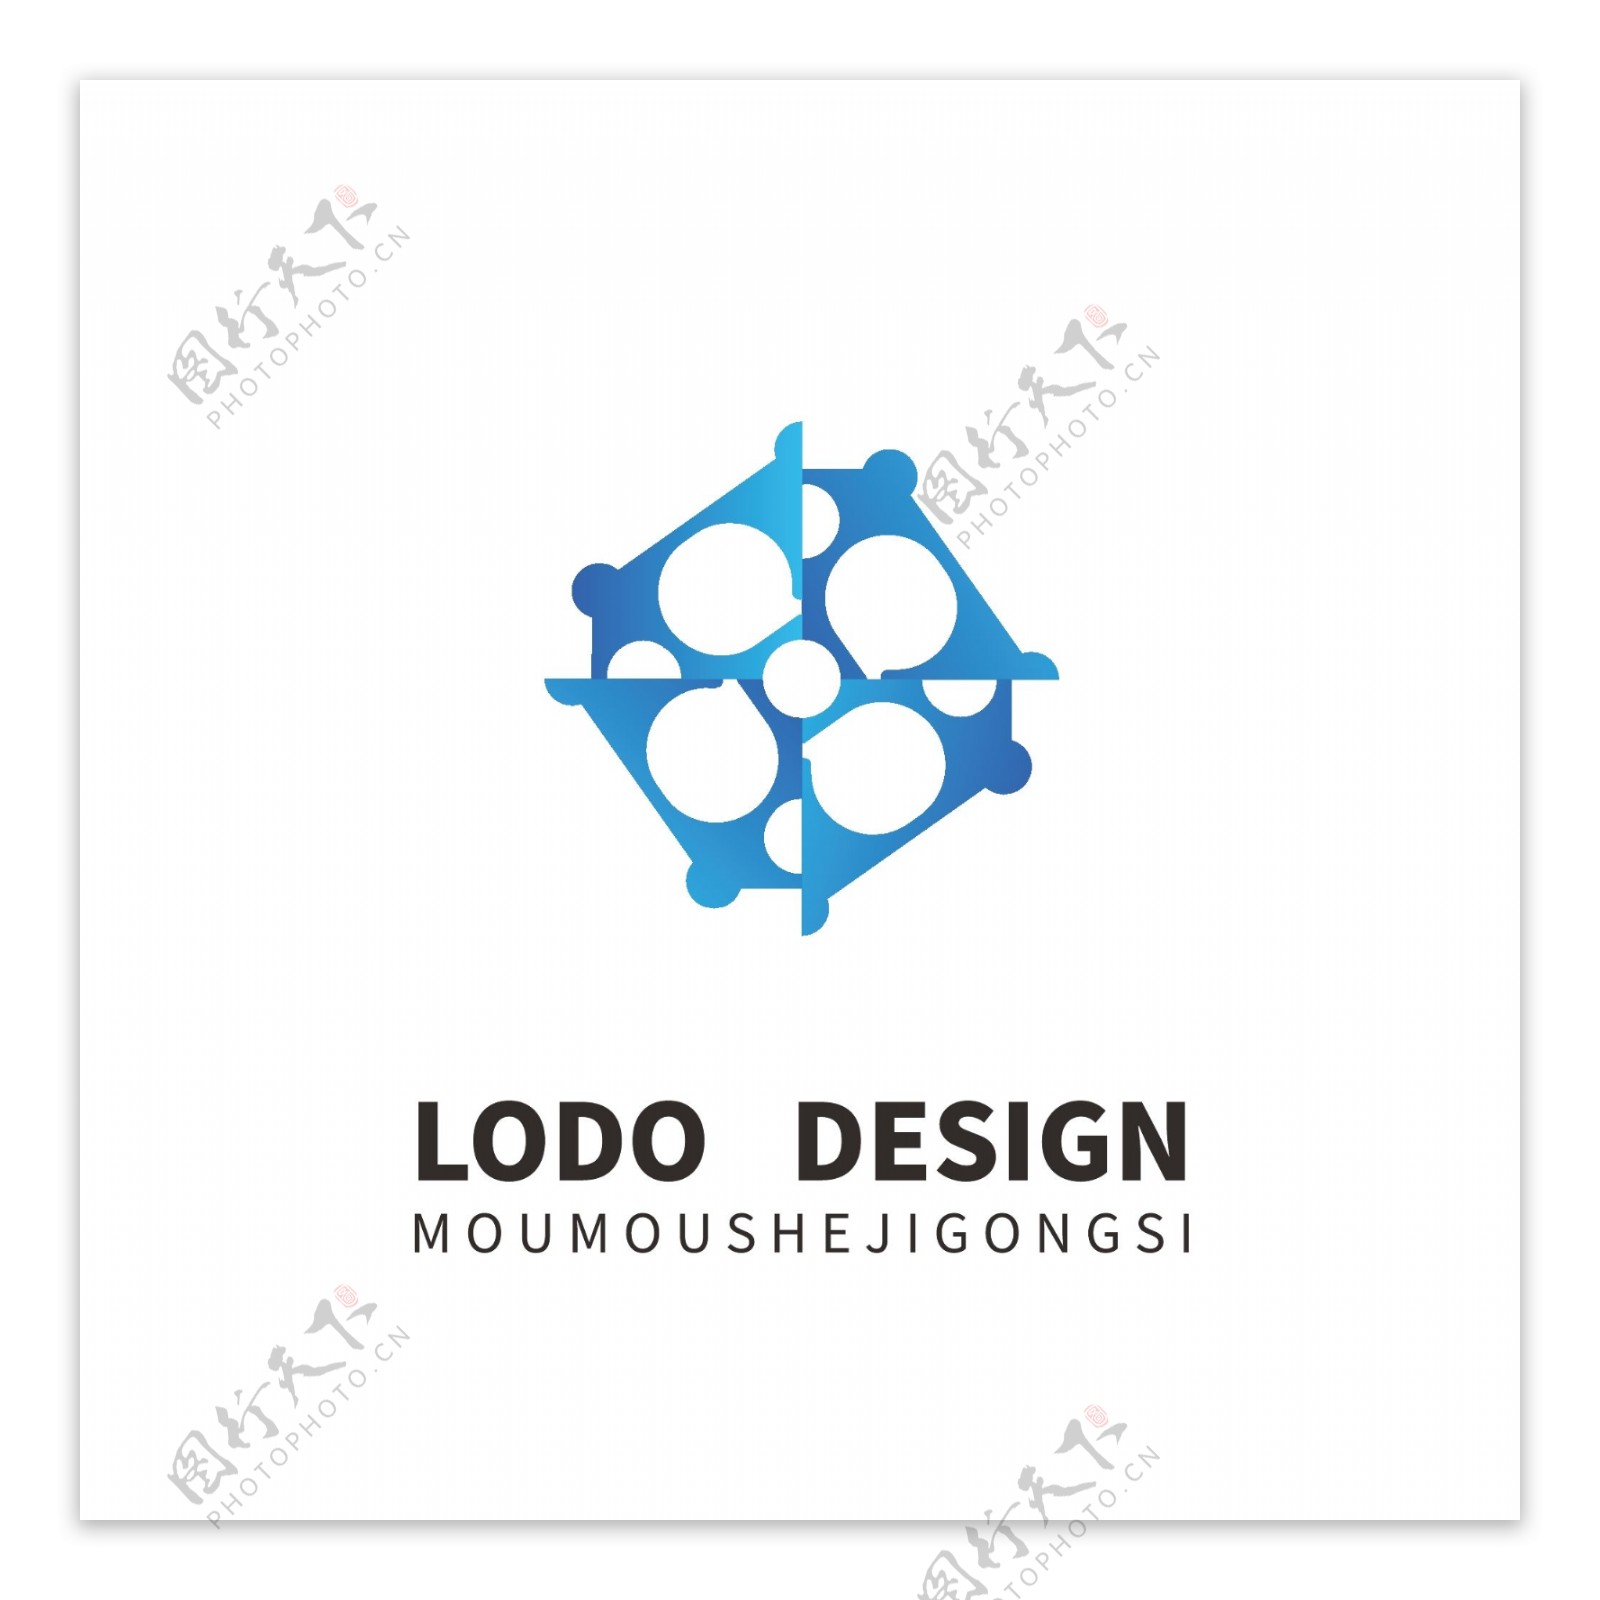 原创企业四边形蓝色科技logo设计